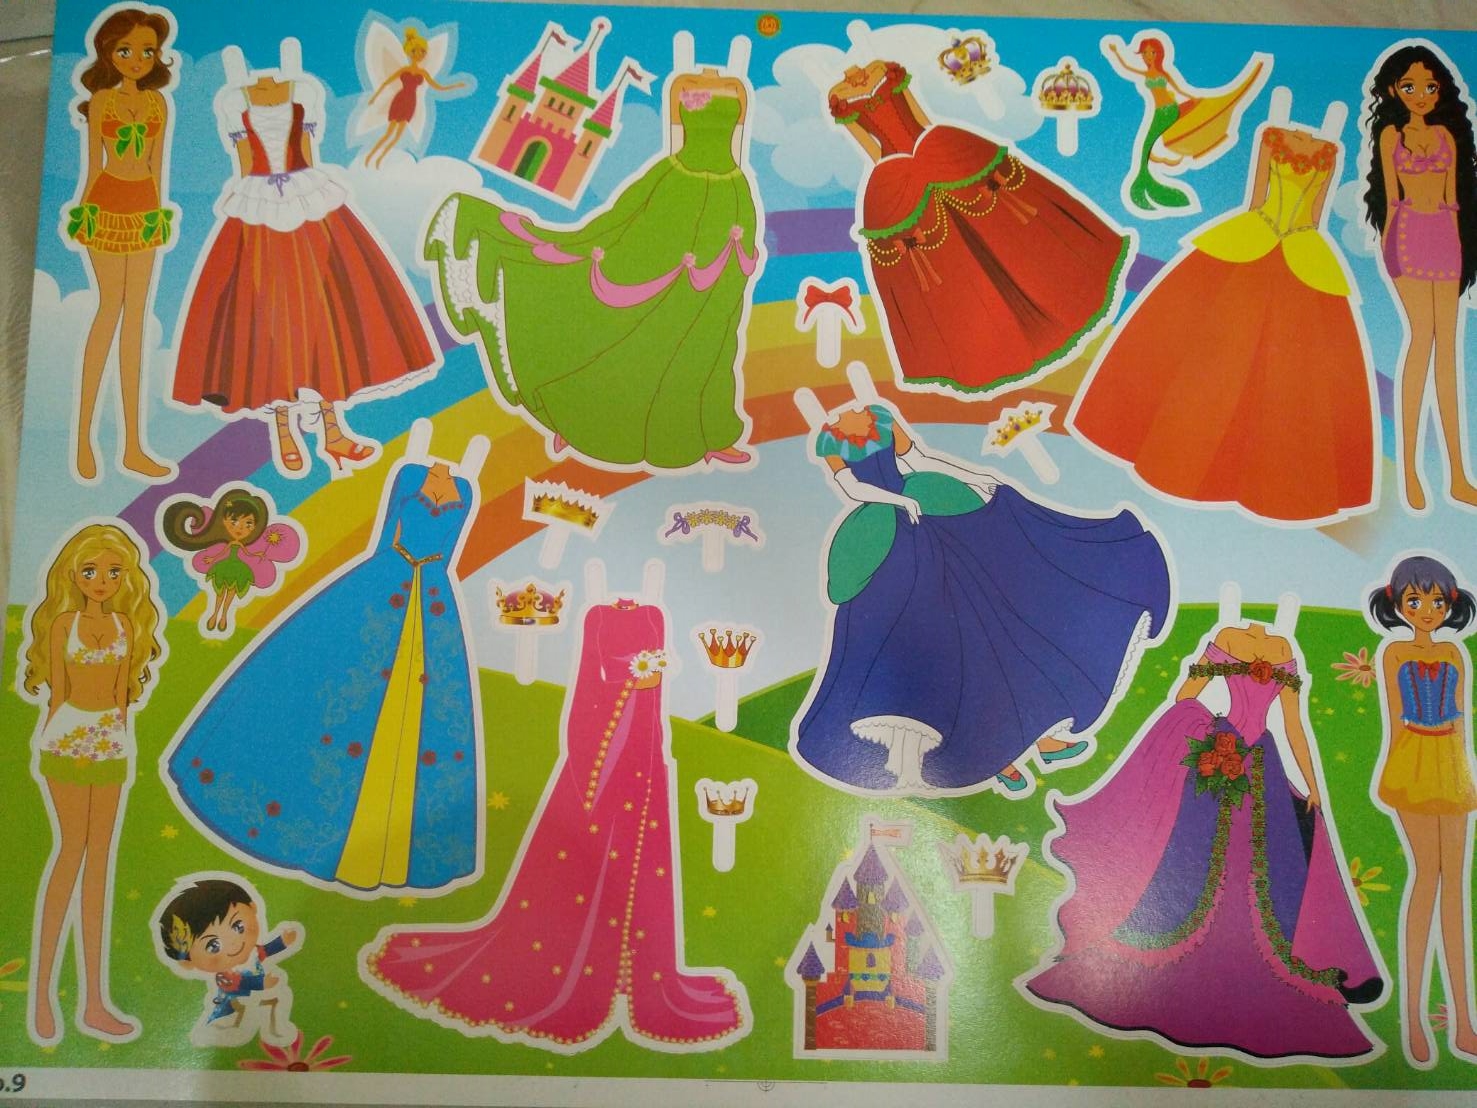 ตุ๊กตากระดาษ ตุ๊กตากระดาษสีสวยหลากหลายแบบน่ารักๆ 12 แผ่น สีสวยสด  พร้อมส่งค่ะ | Lazada.co.th